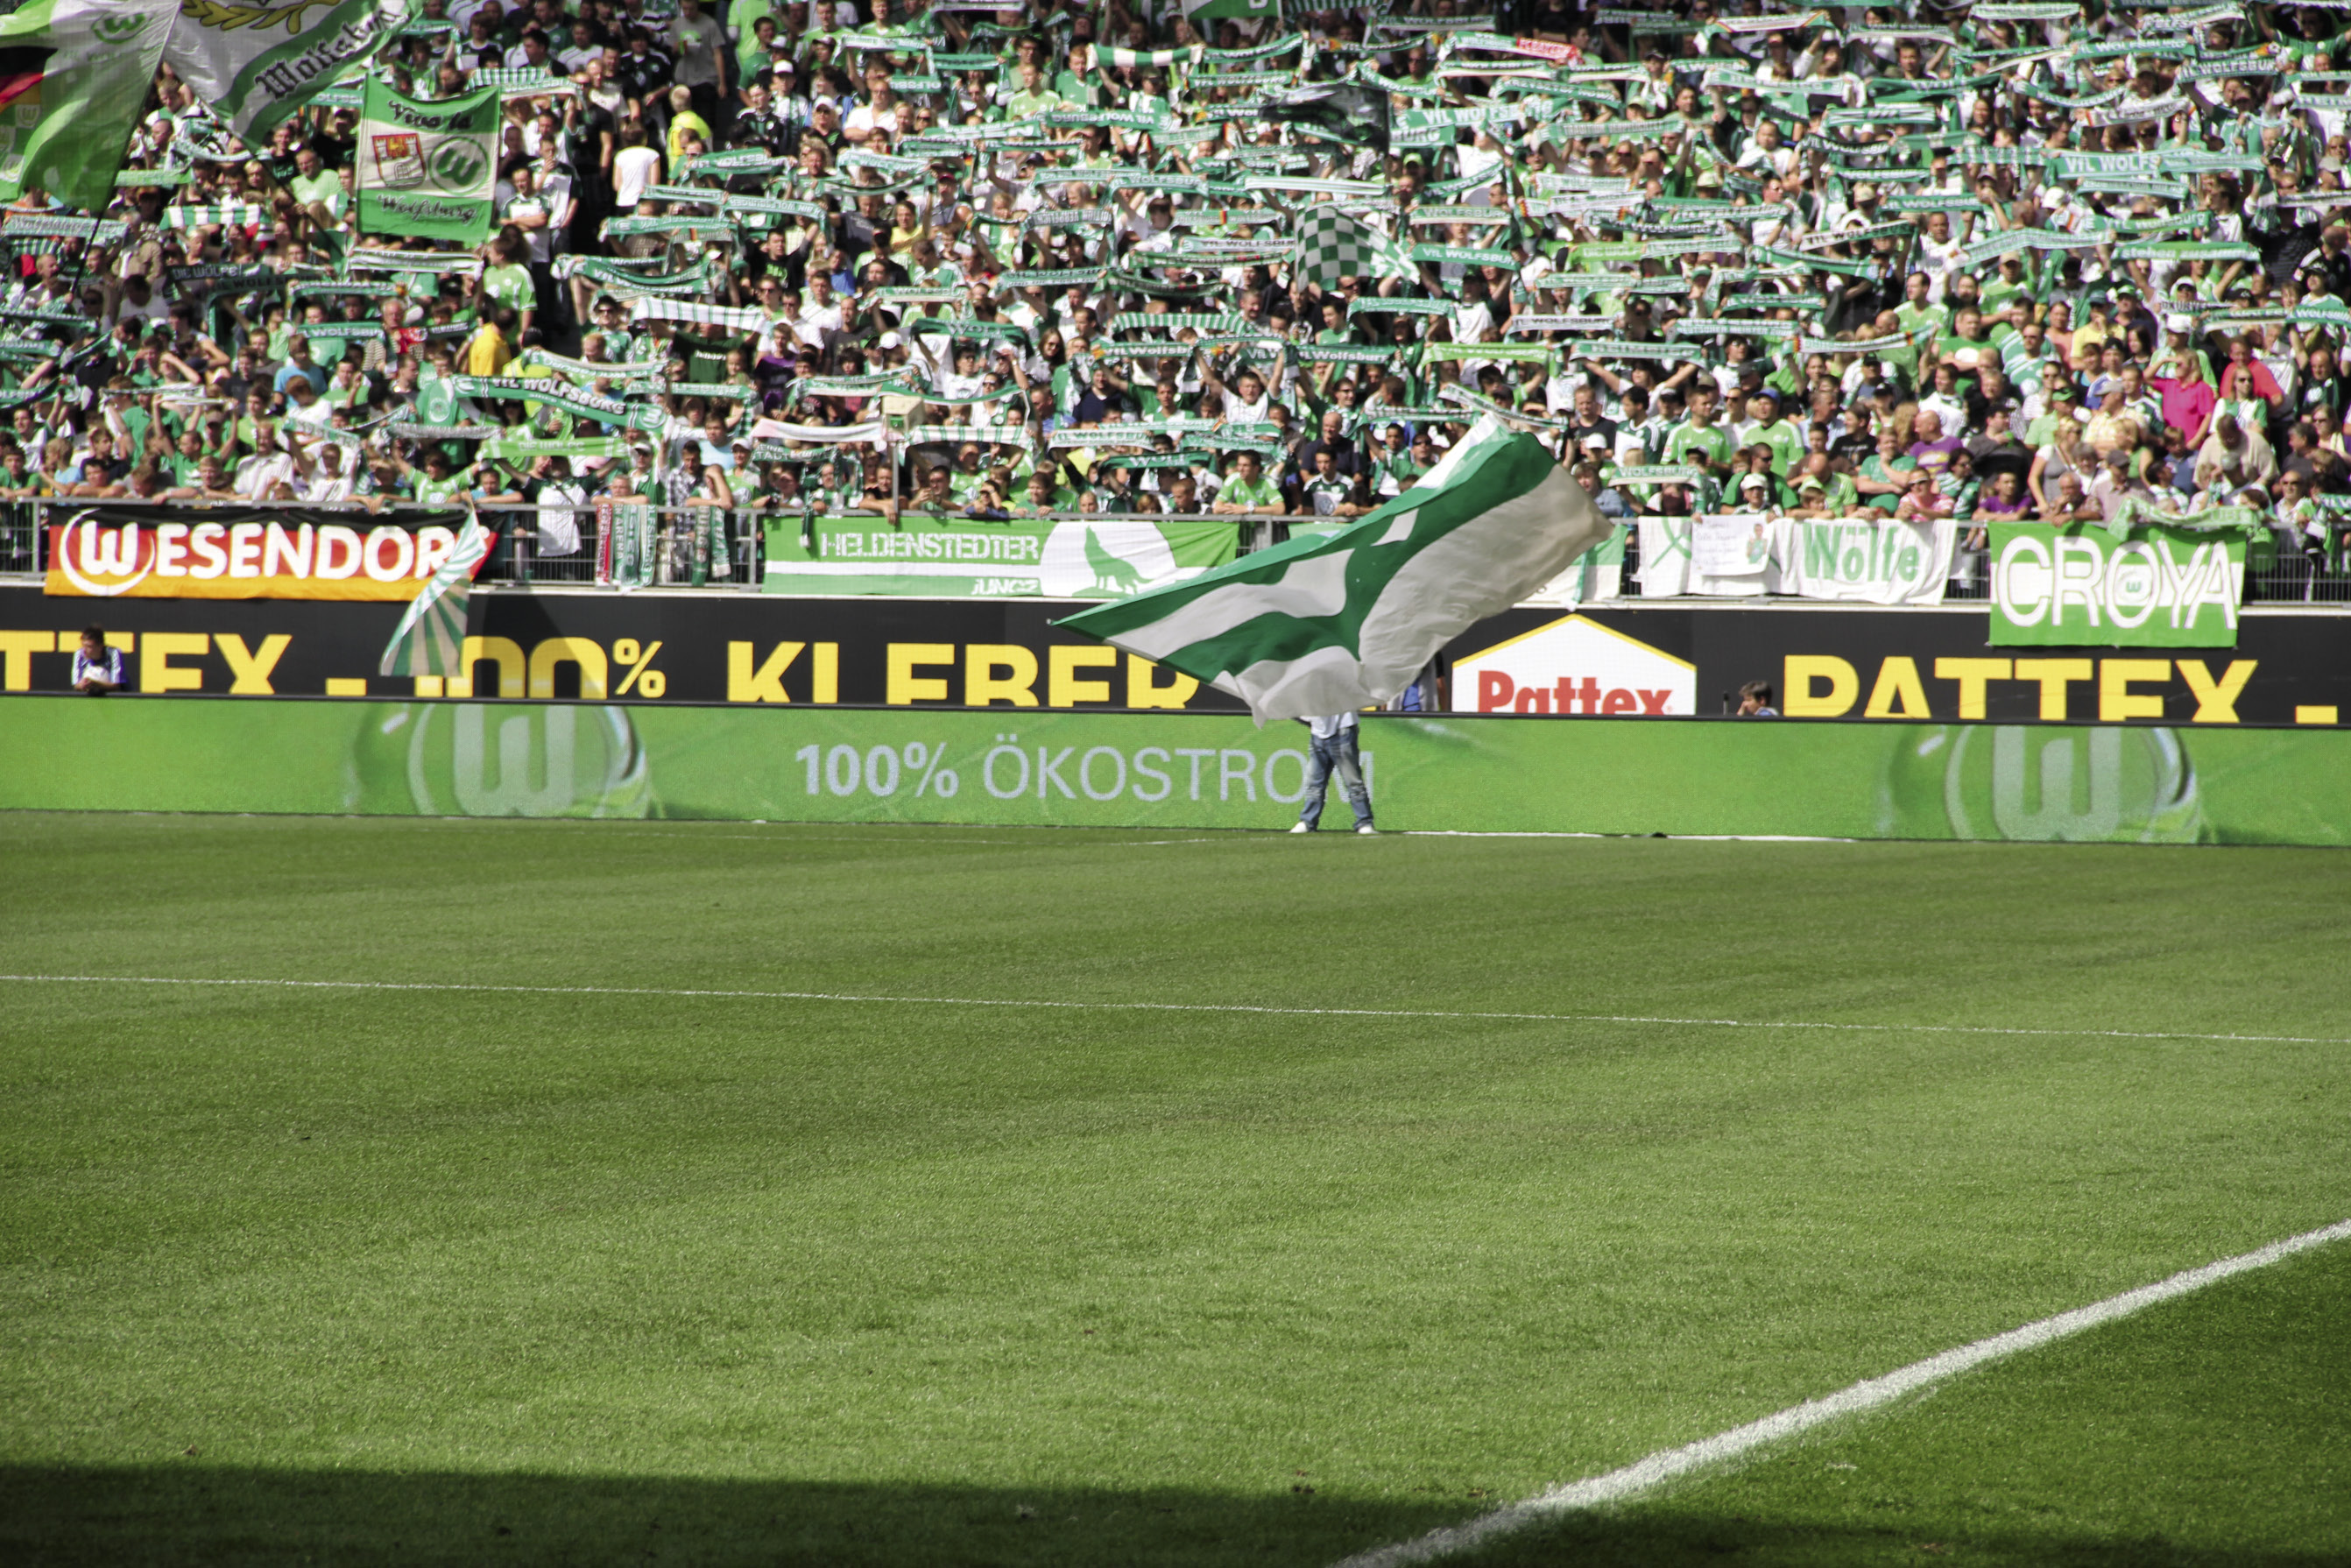 Borussia Dortmund stellt auf Ökostrom um. © Nina Stiller Photography/Vfl Wolfsburg